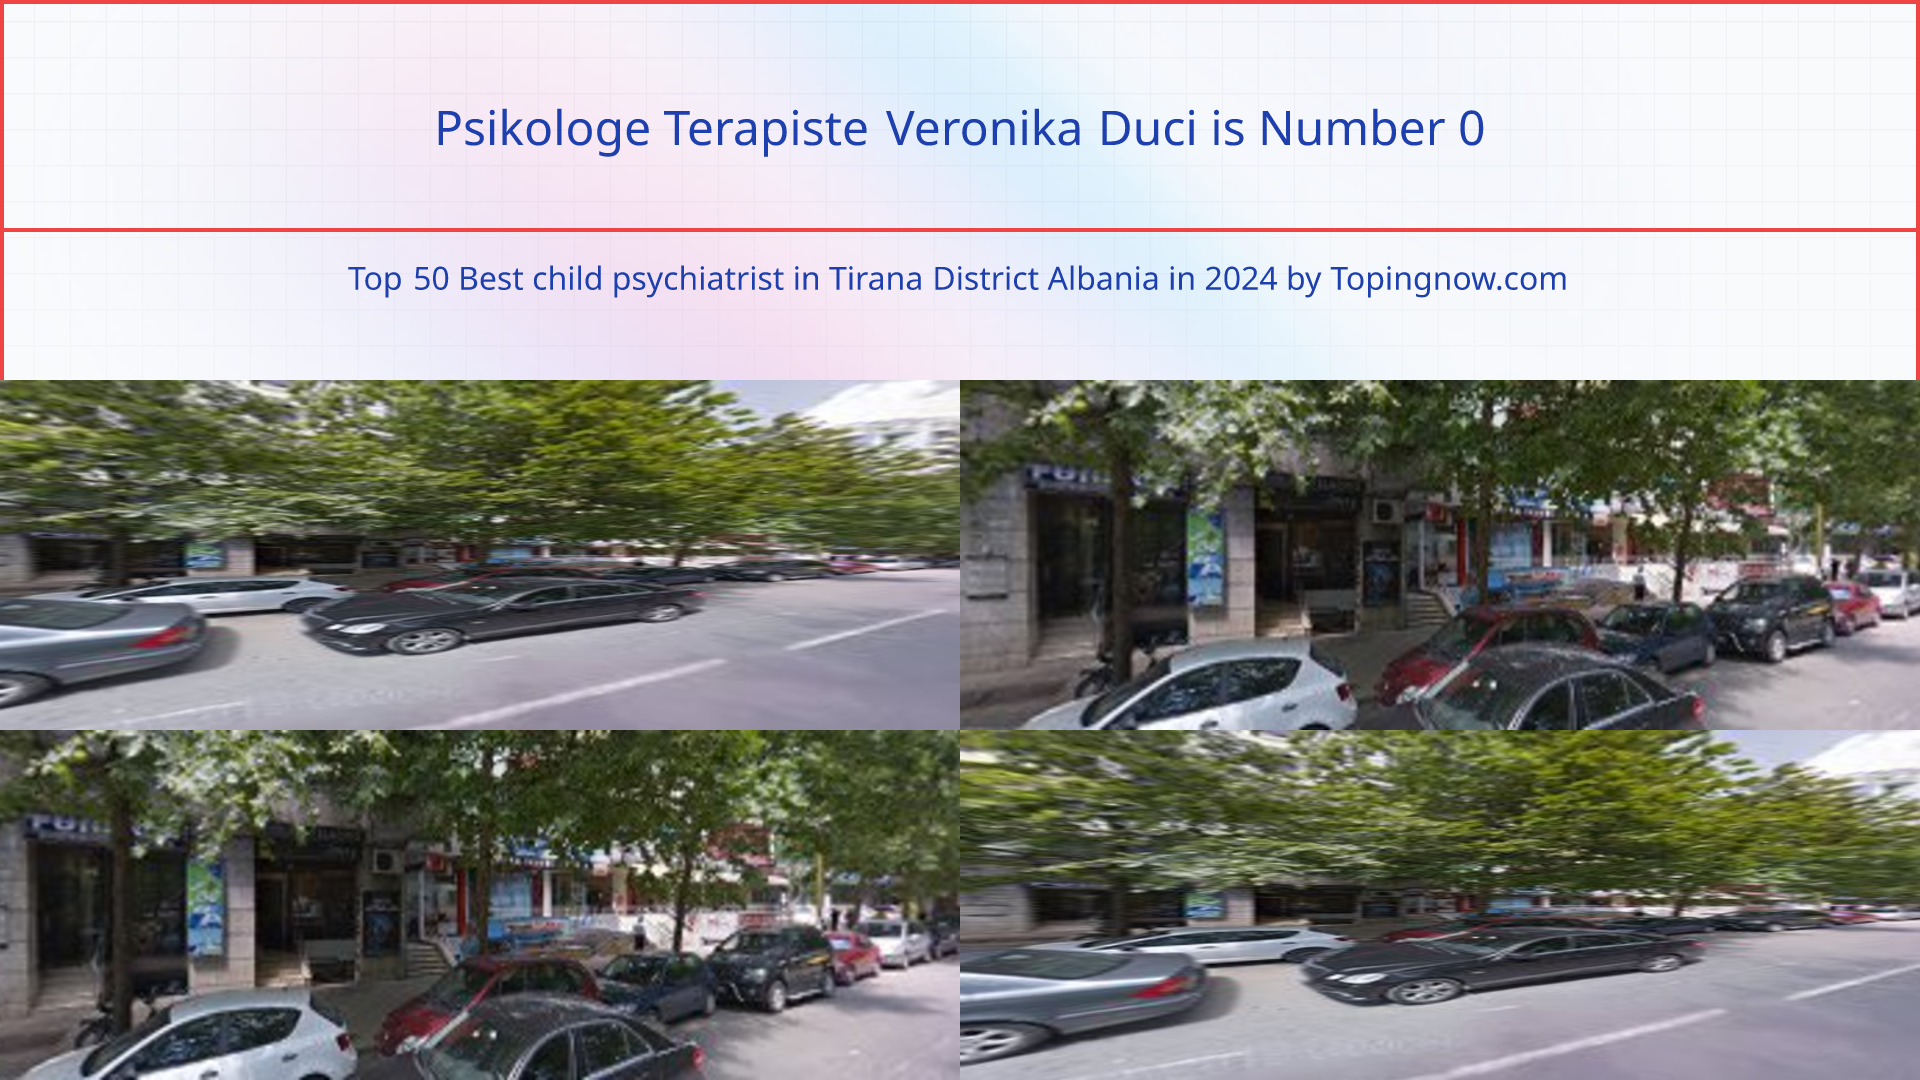 Psikologe Terapiste Veronika Duci: Top 50 Best child psychiatrist in Tirana District Albania in 2024